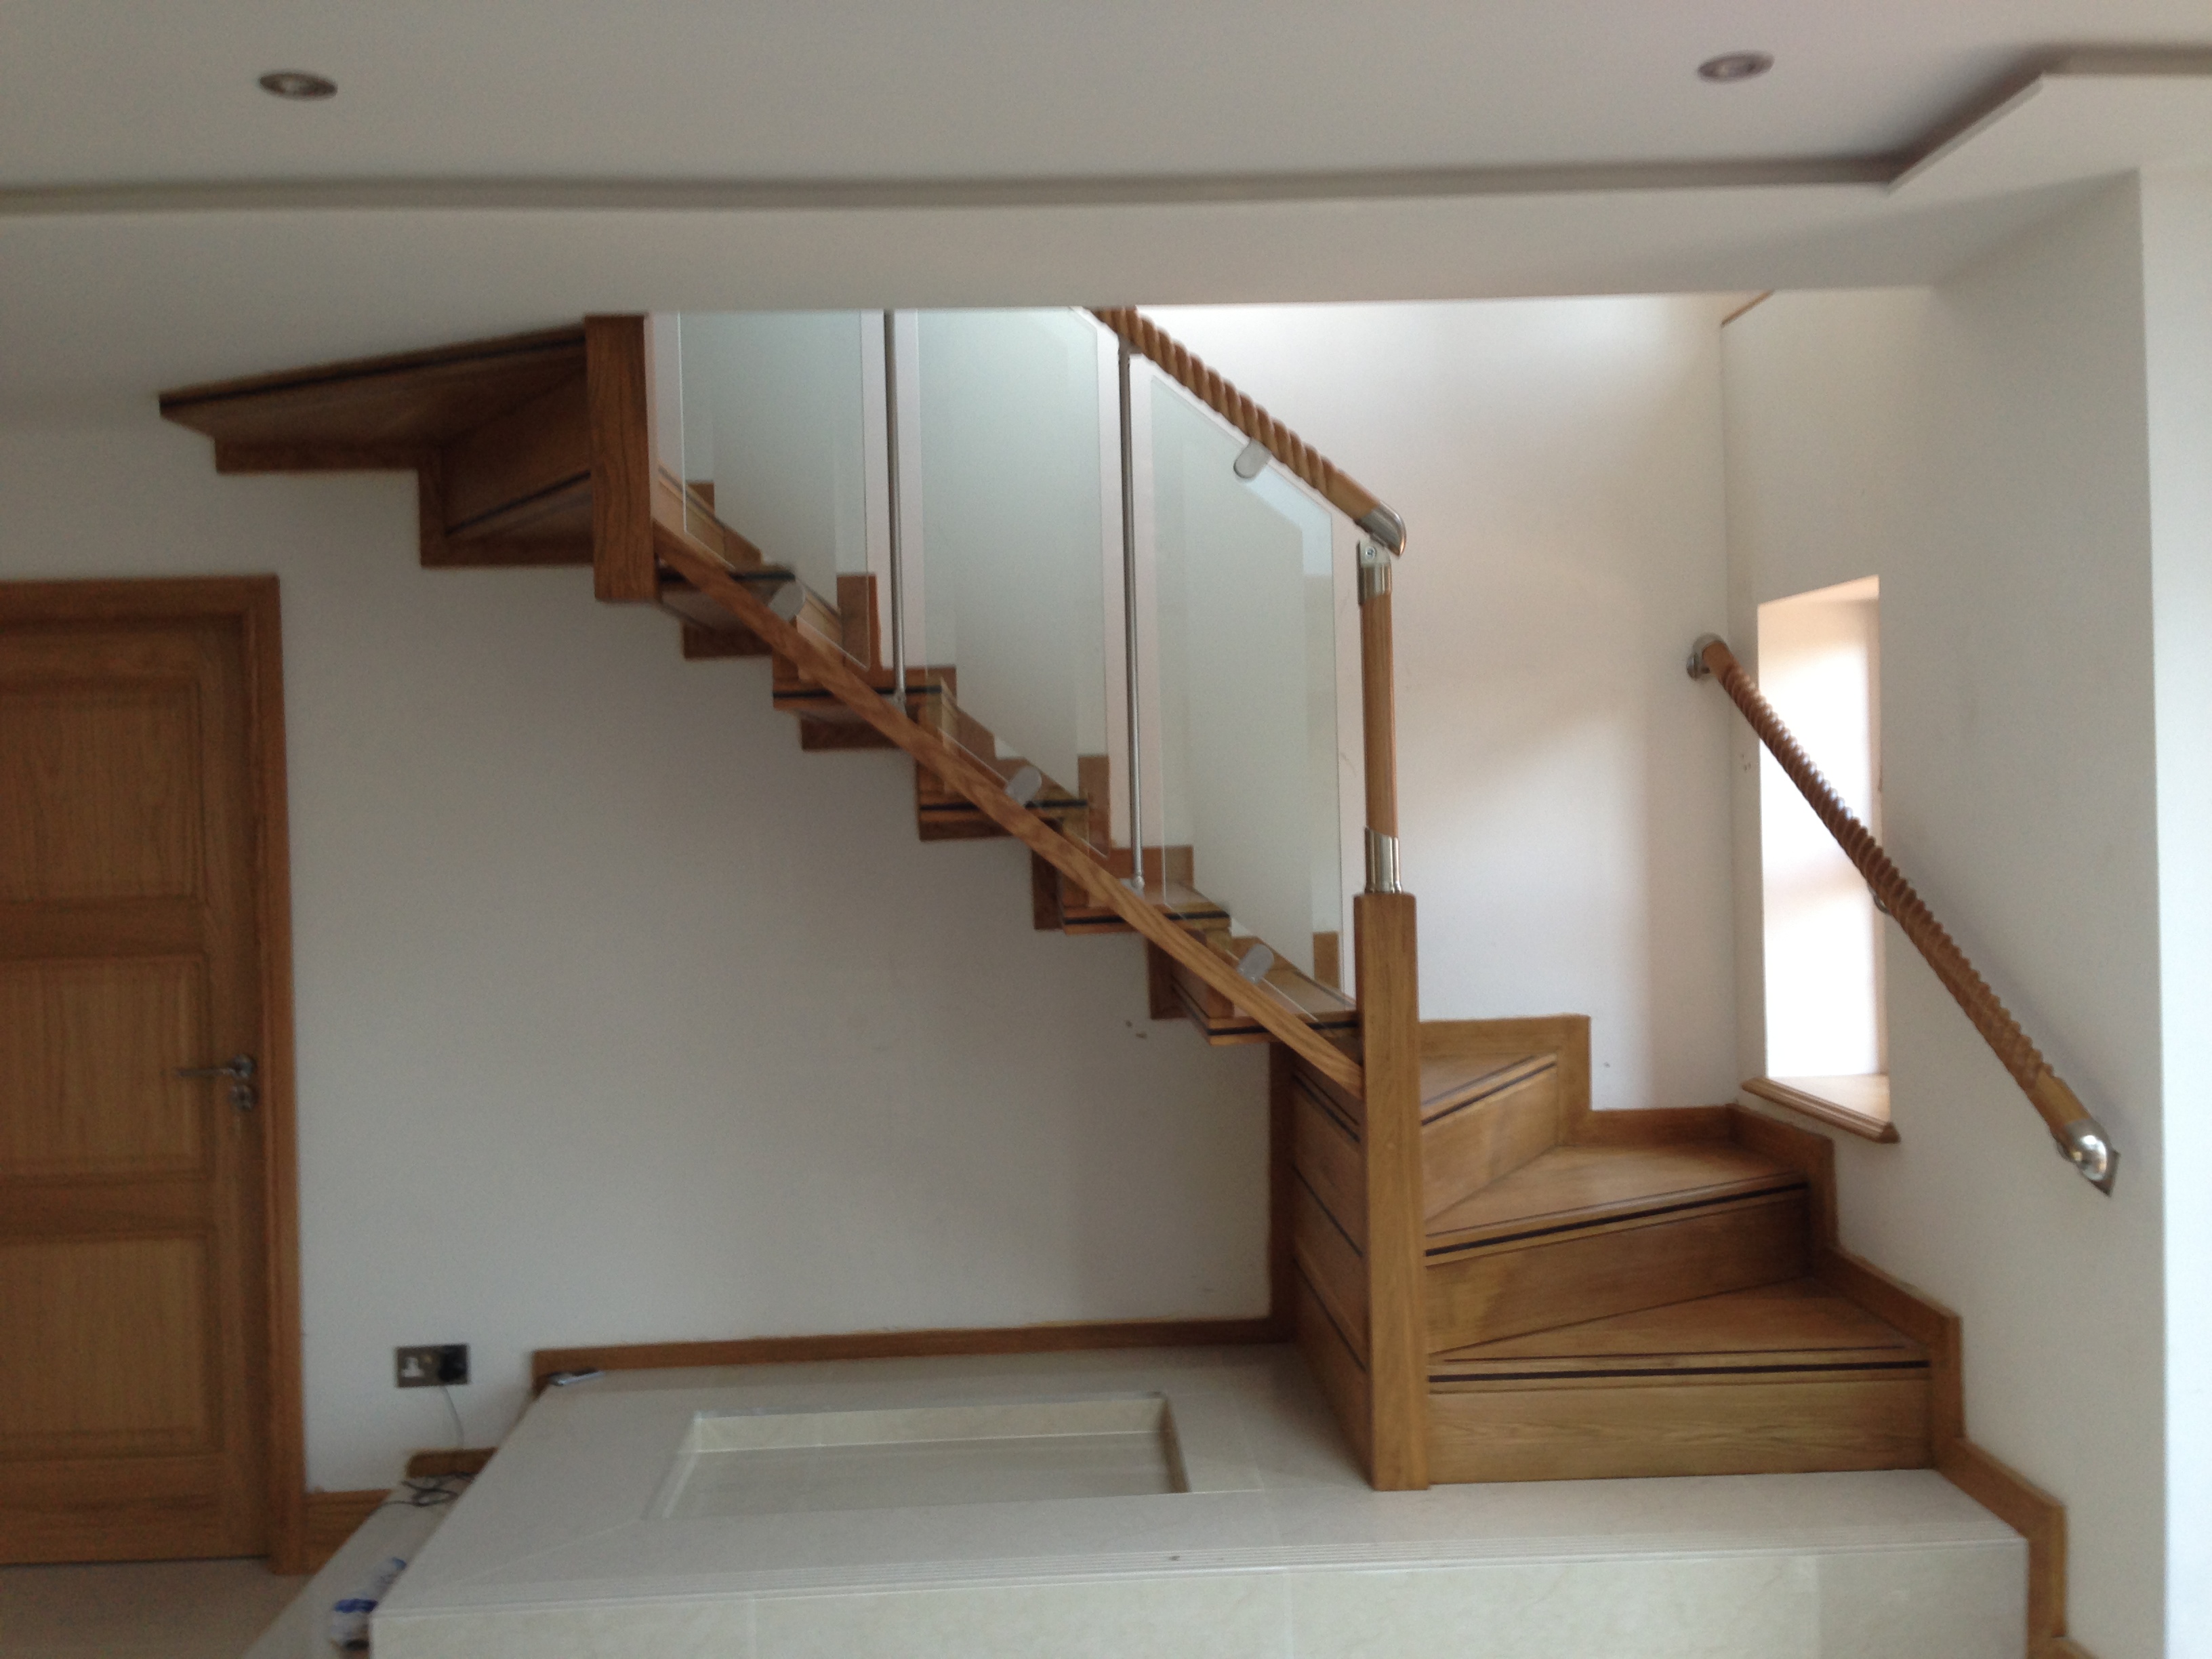 oak staircase